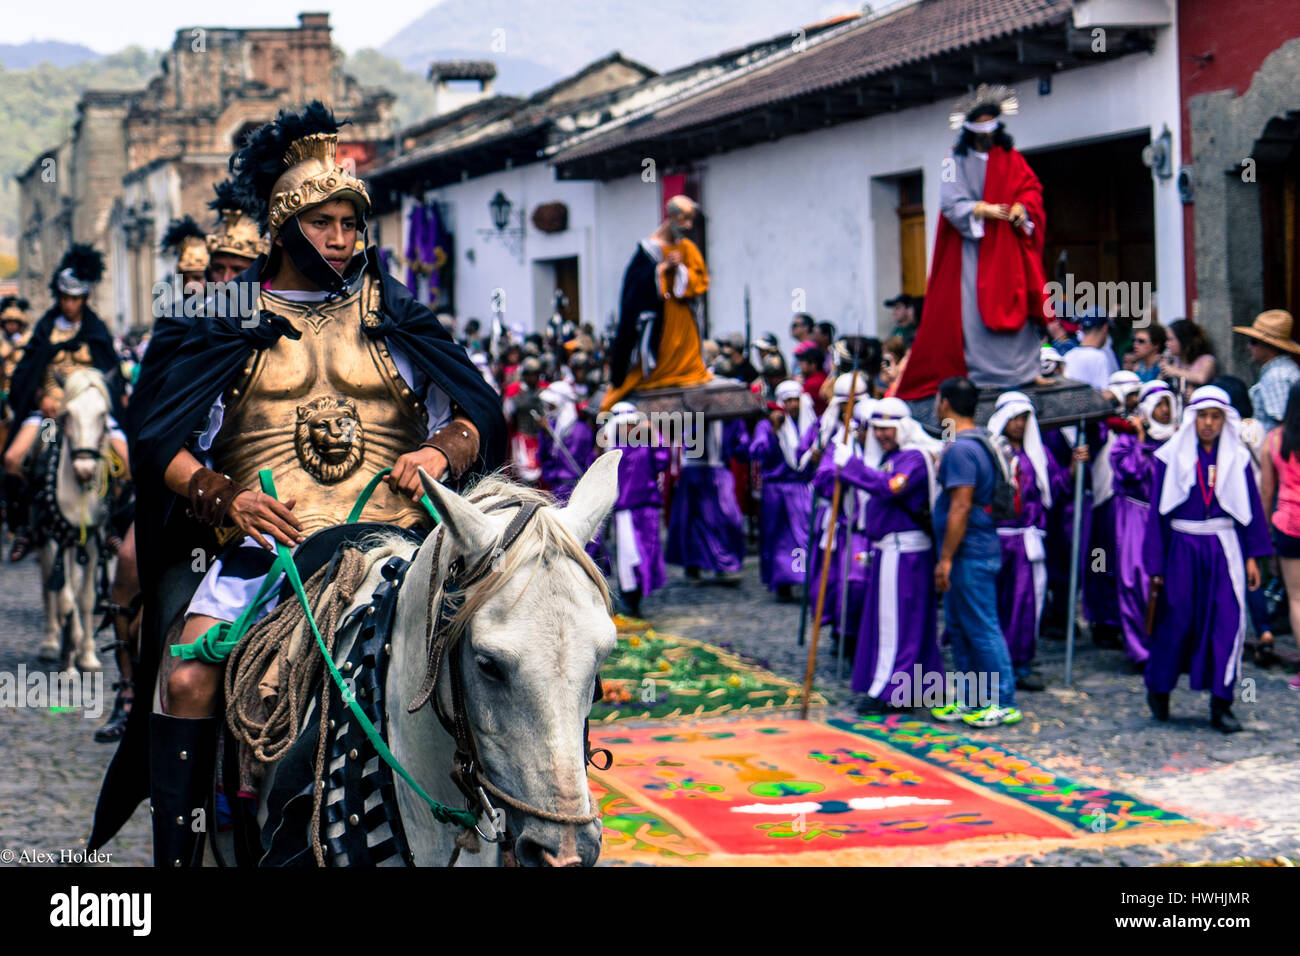 Parade während der Osterwoche in Antigua, Guatemala mit römischen Wachen auf dem Pferderücken und Statuen der Jungfrau Maria und Jesus. Stockfoto